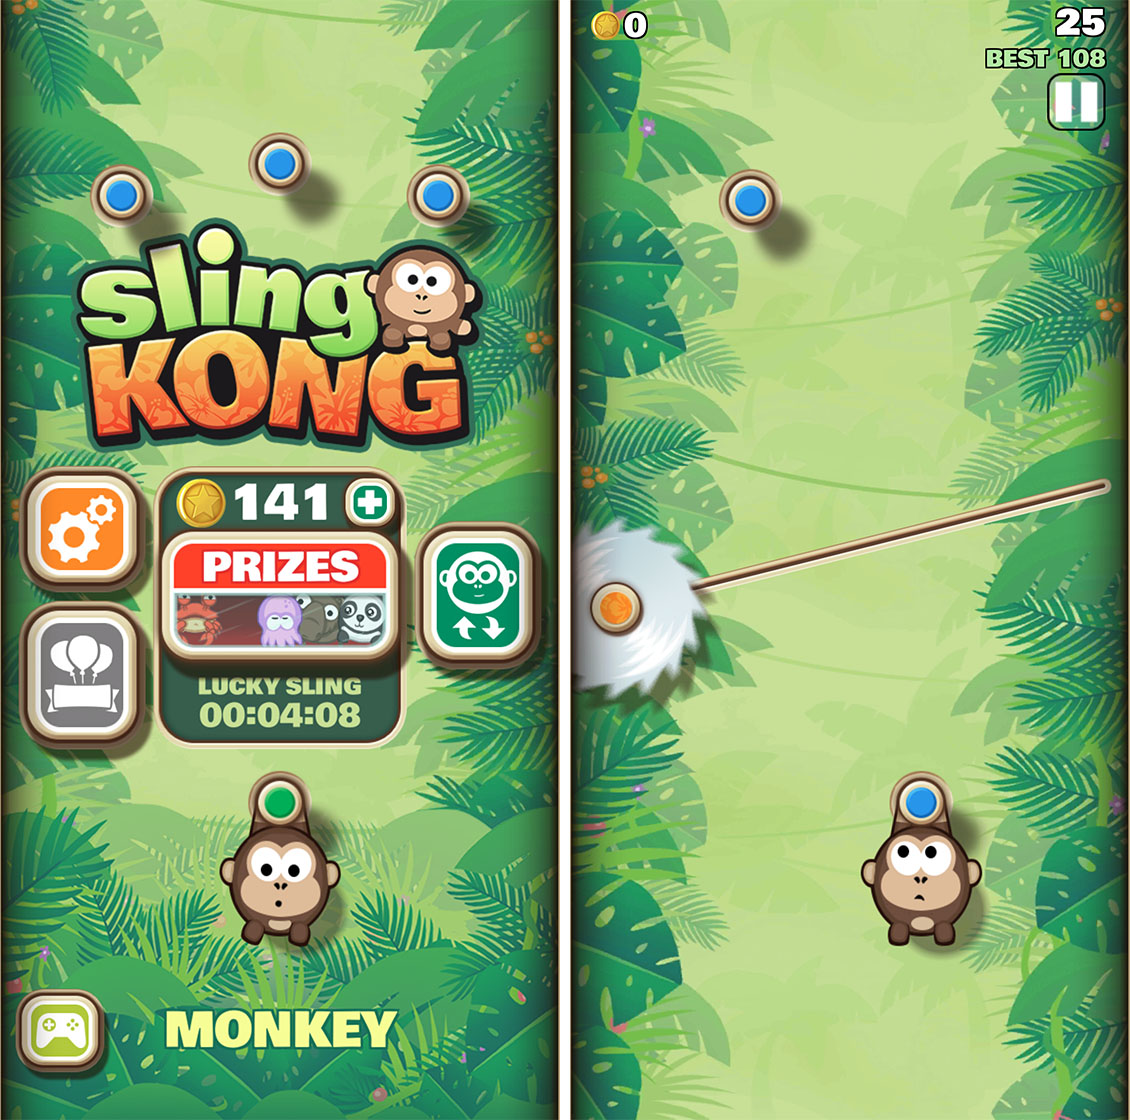 Sling Kong start screen